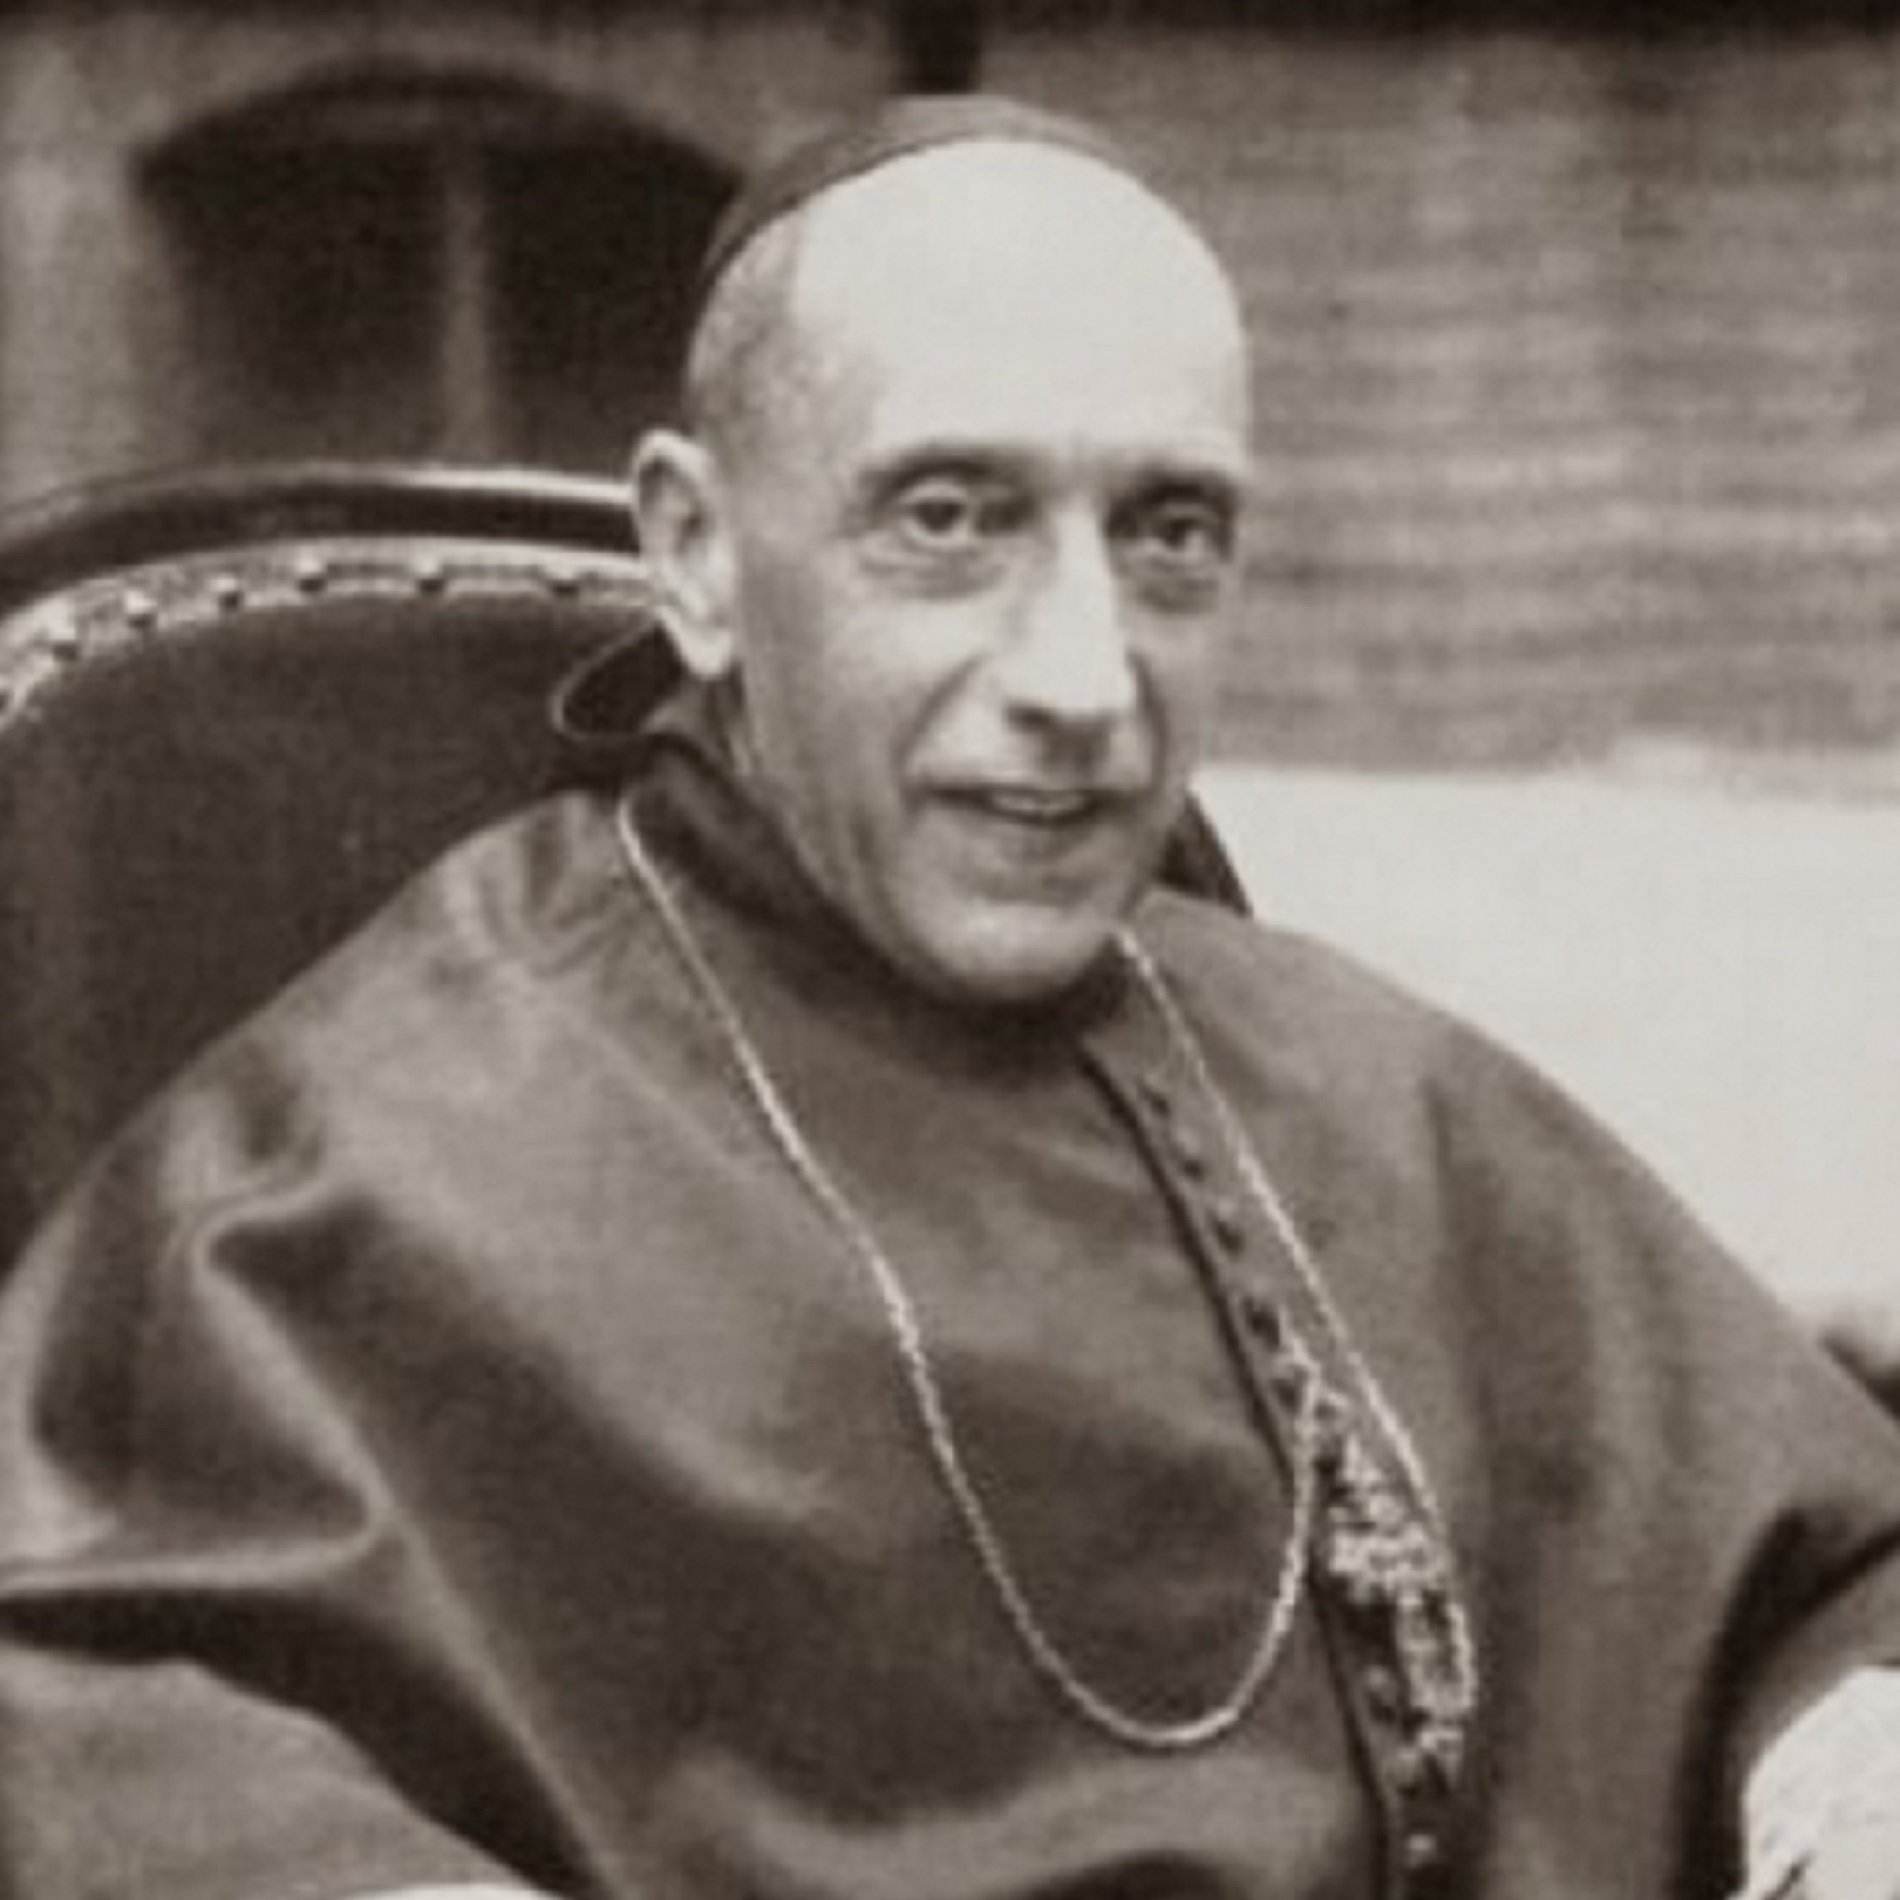 Mor a l'exili Vidal i Barraquer, el cardenal que va plantar cara a Franco